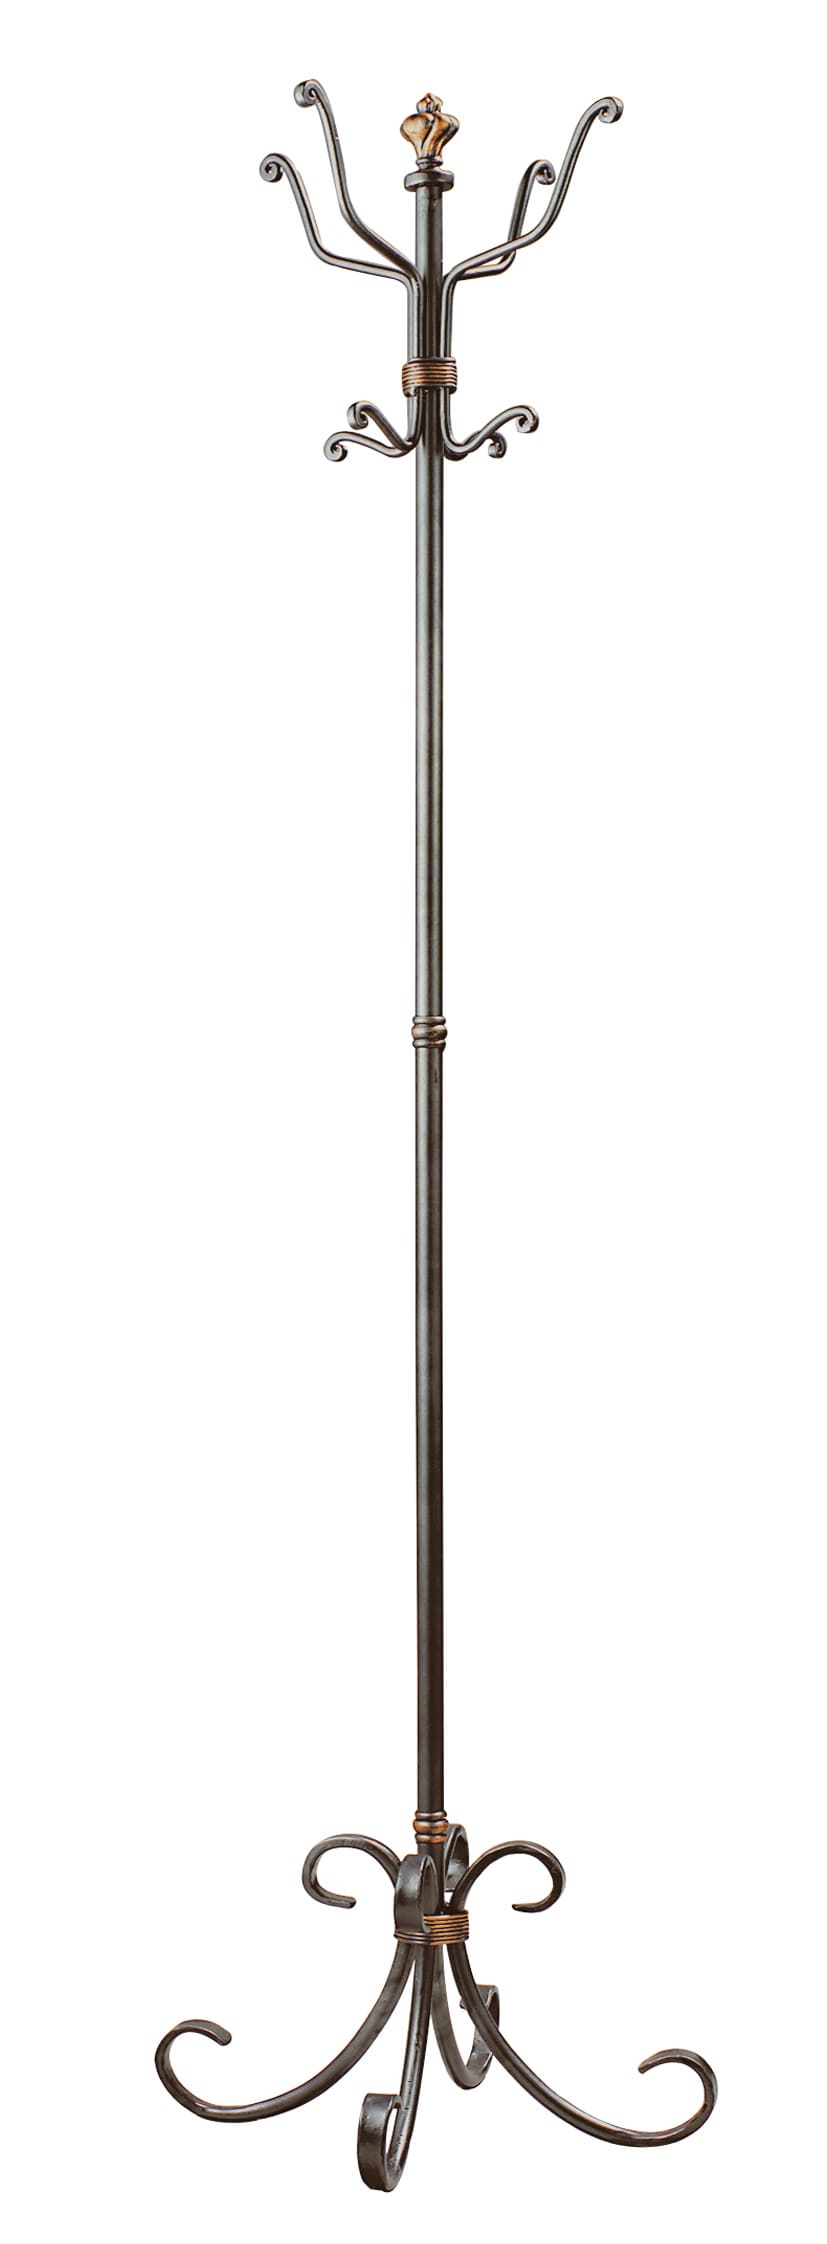 Garderobenständer OPERA 180 x 46 cm Stahl anthrazit/silber